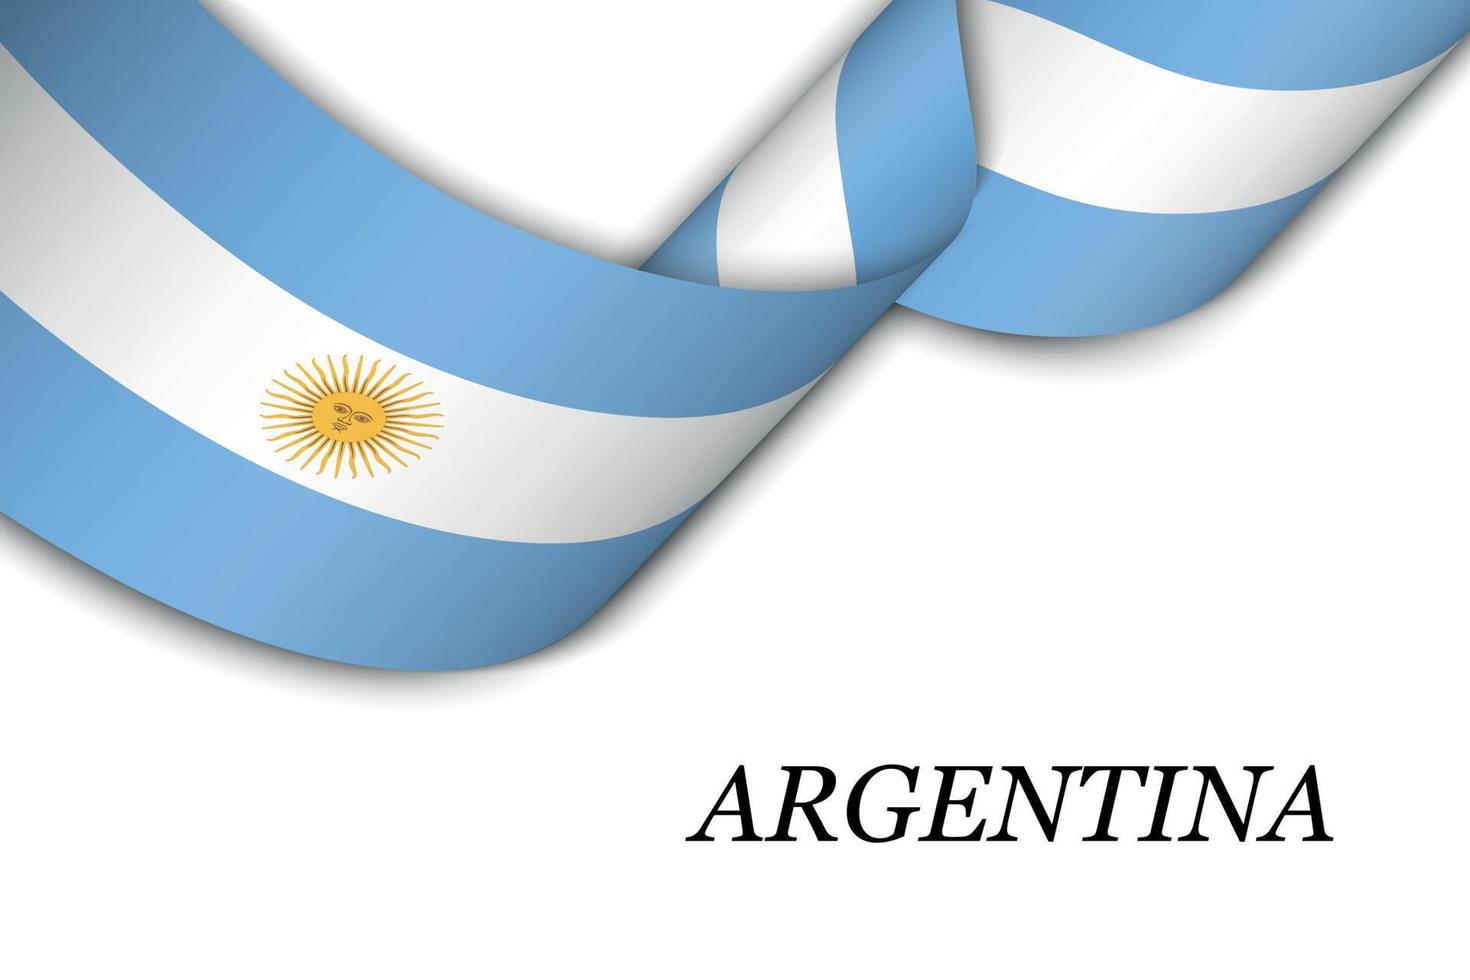 acenando a fita ou banner com bandeira da argentina vetor